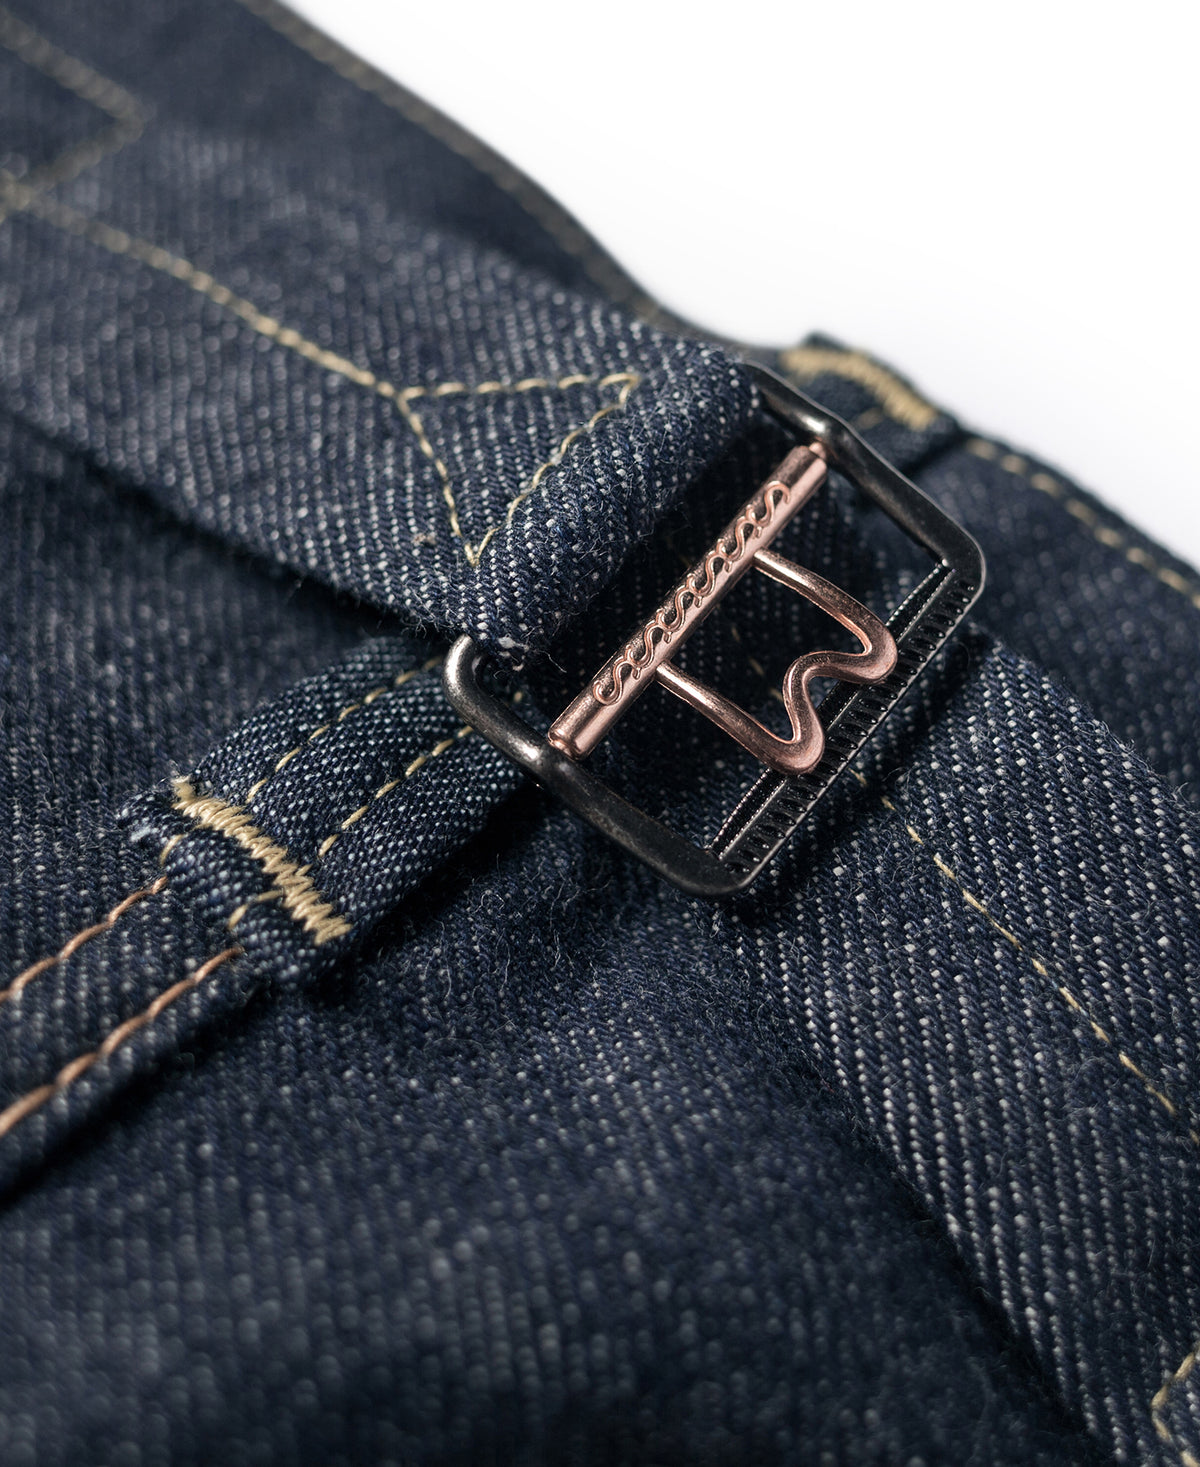 Lot 808XX 1937 Model Selvedge Denim Jeans